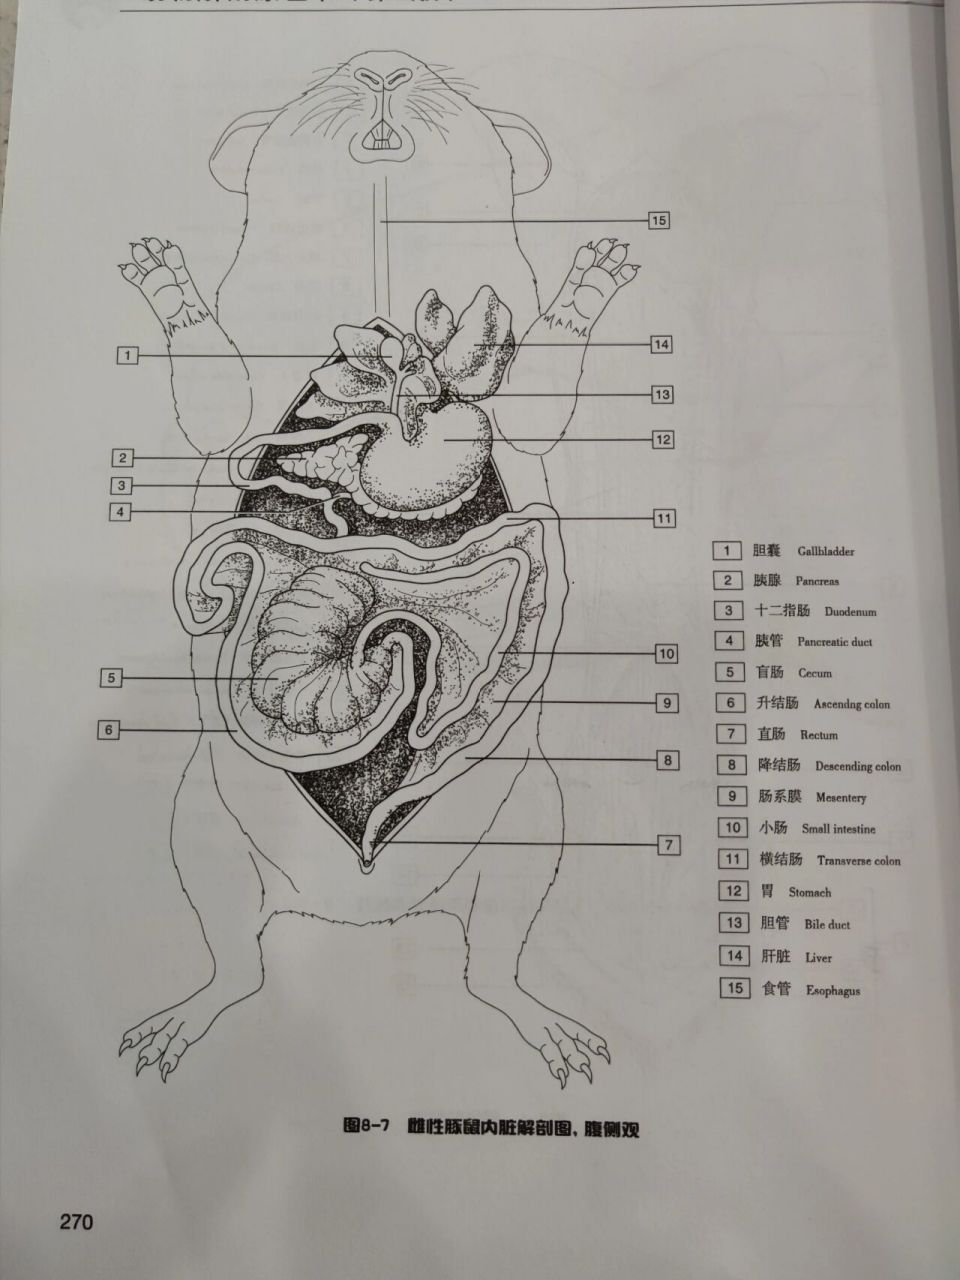 豚鼠荷兰猪mm的内脏解剖图 第一眼真的觉得,这个内脏解剖图,好可爱呀